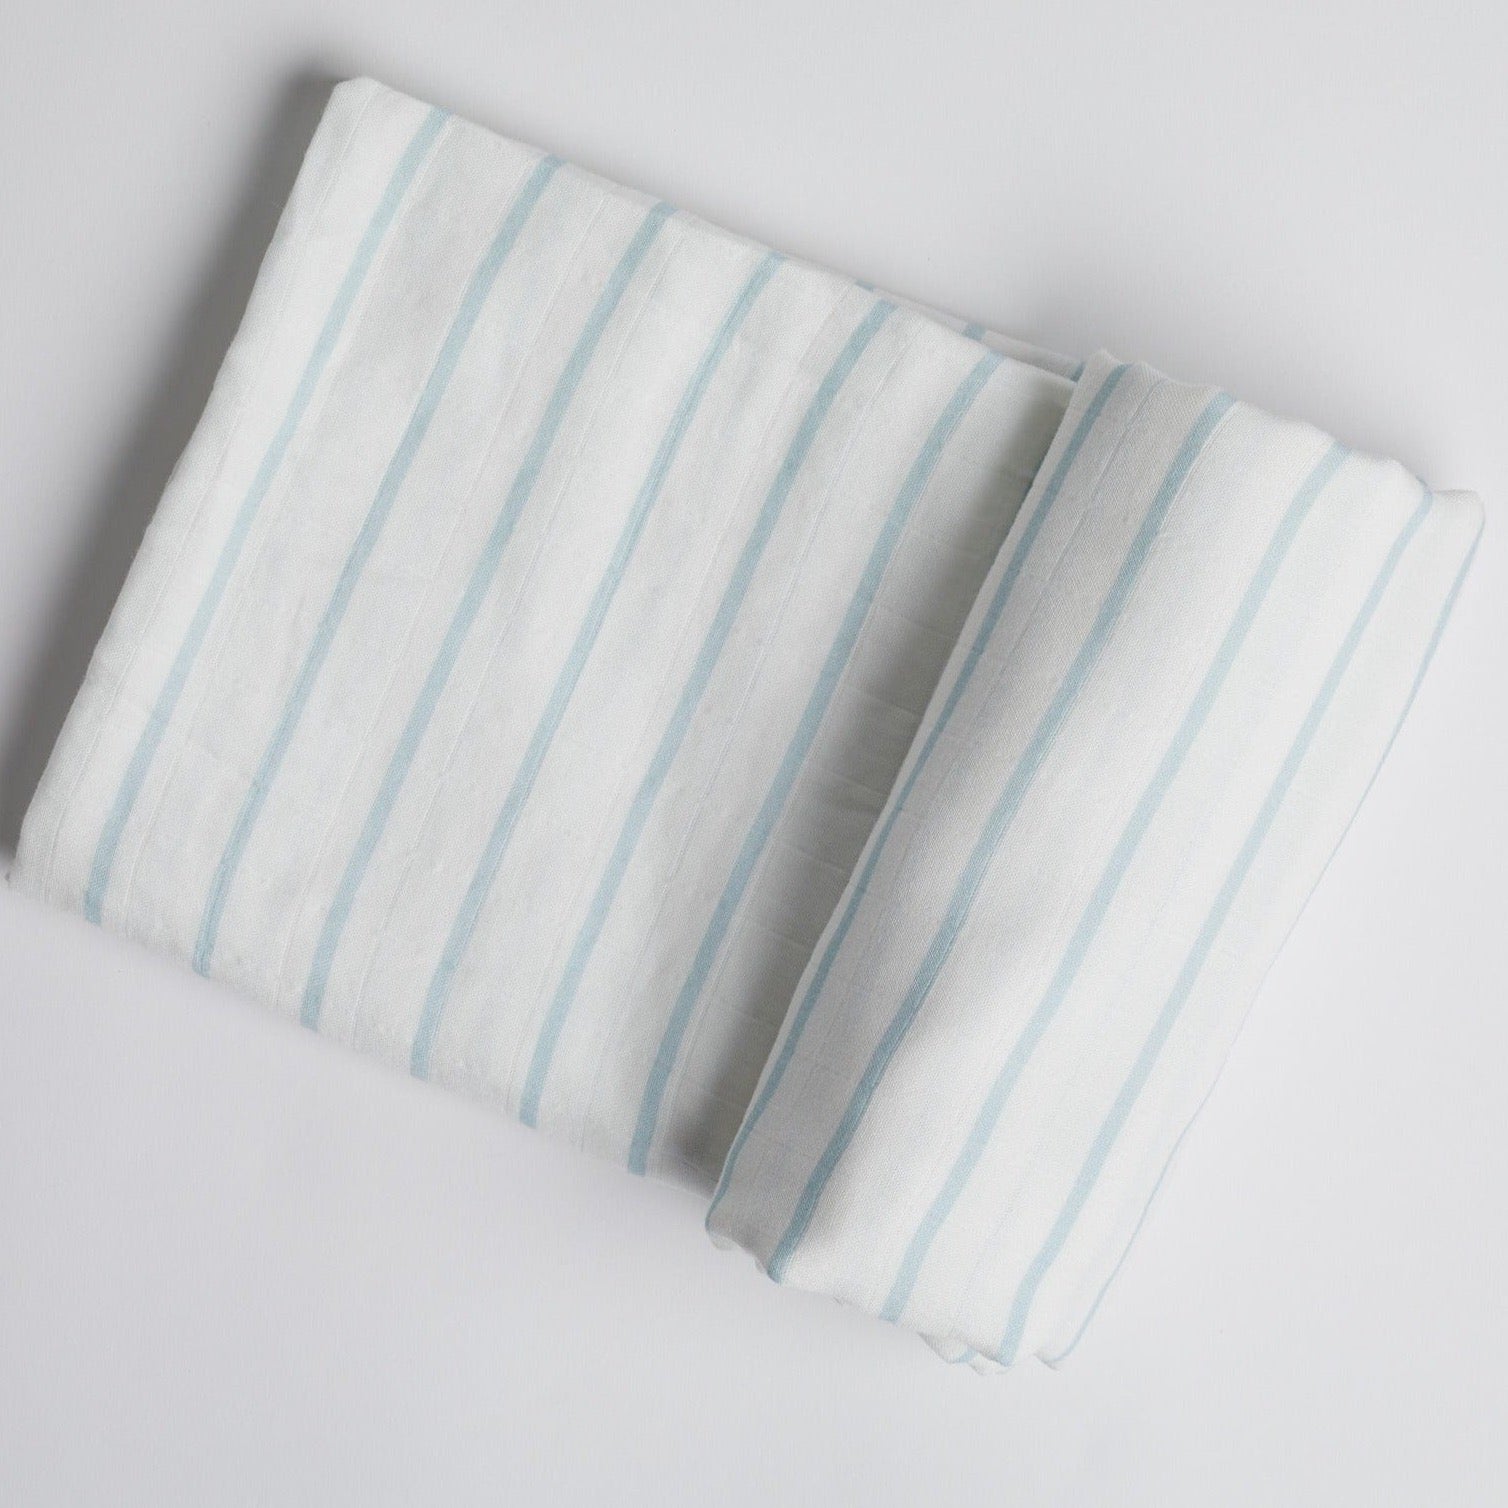 Powder Blue Stripe Swaddle on white background.